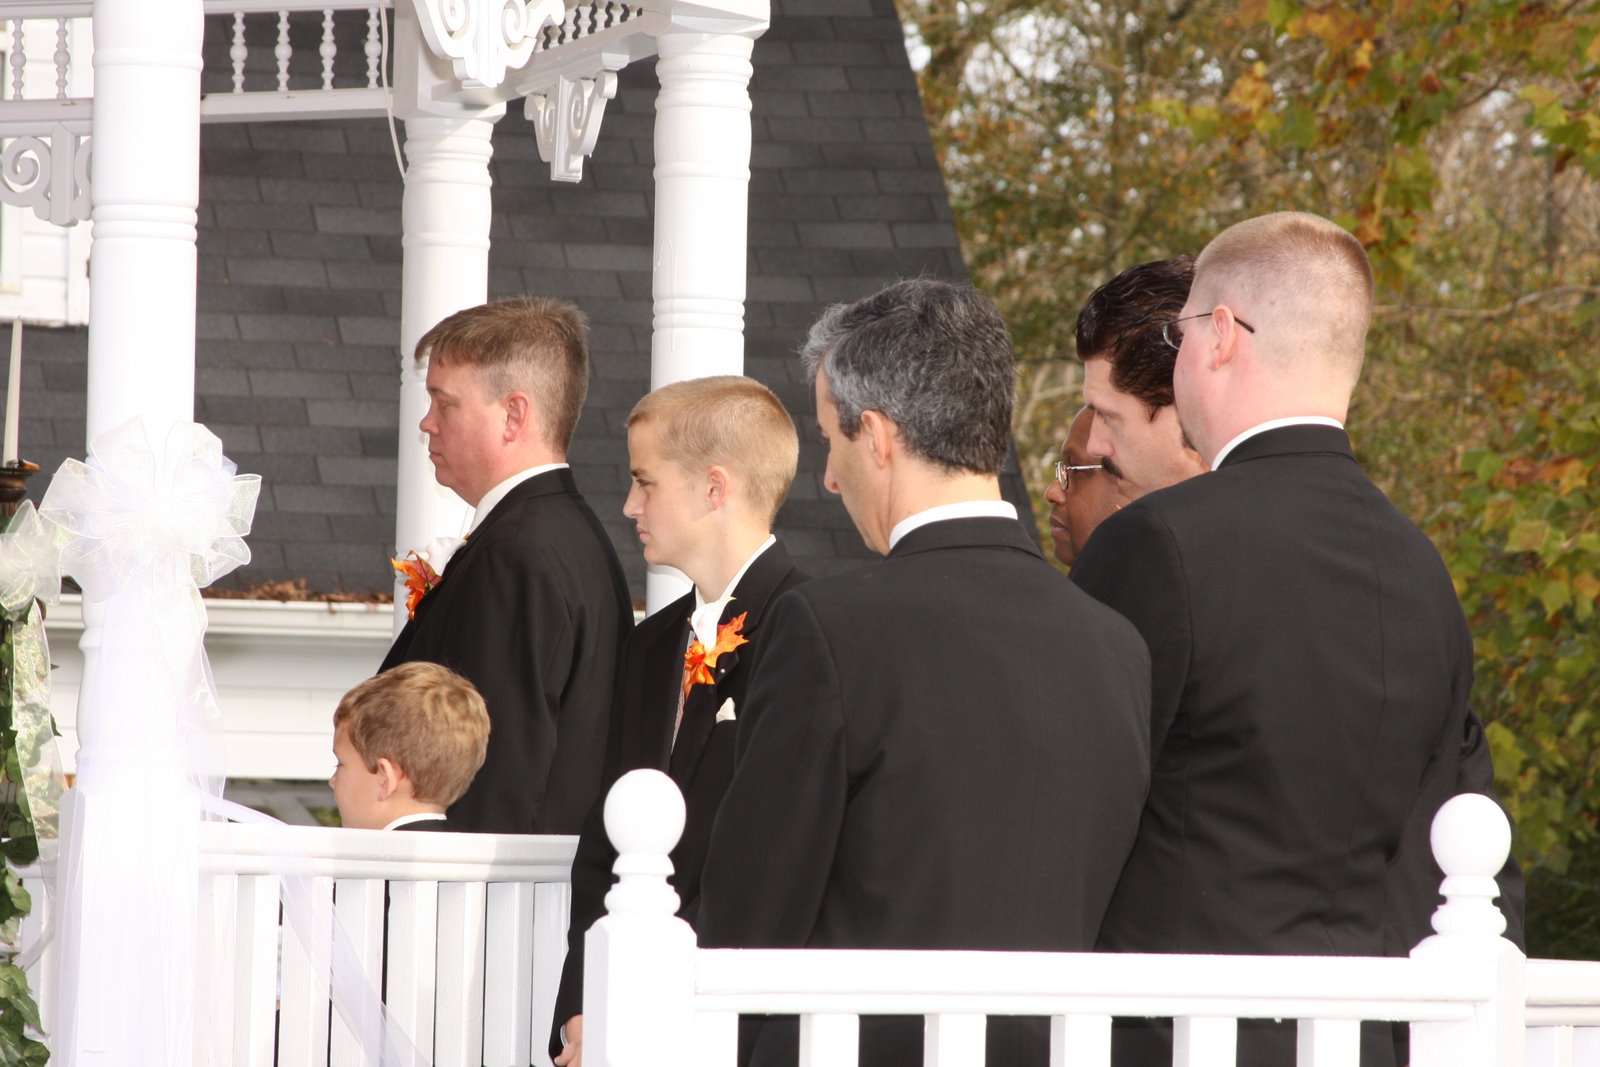 The groom's men watch